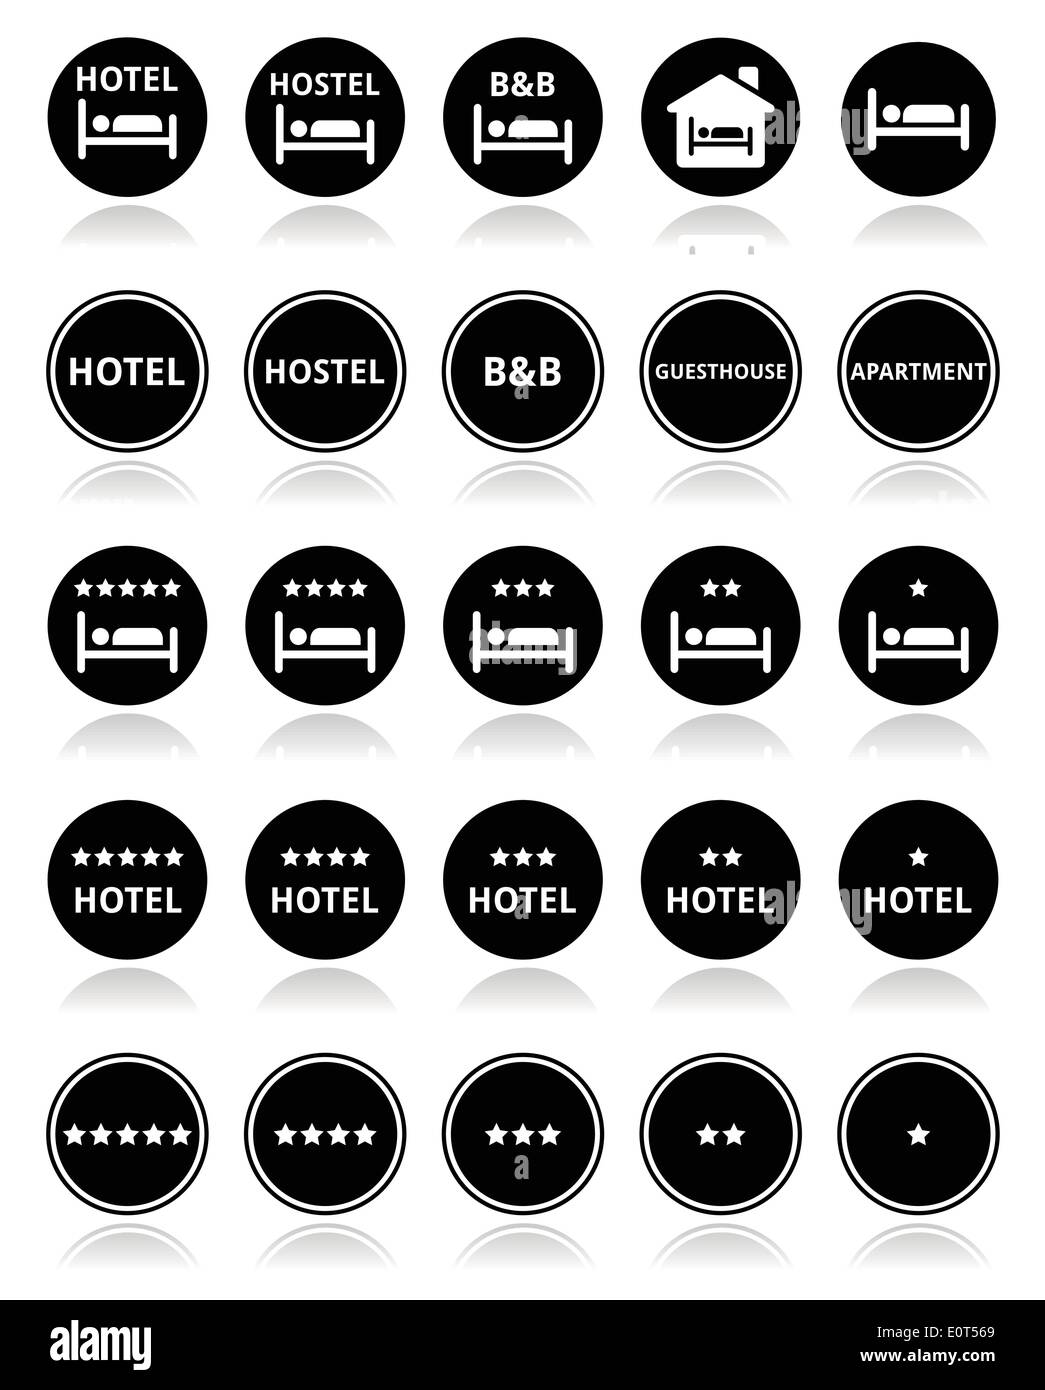 Hôtel, auberge, B&B avec étoile tour icons set Illustration de Vecteur